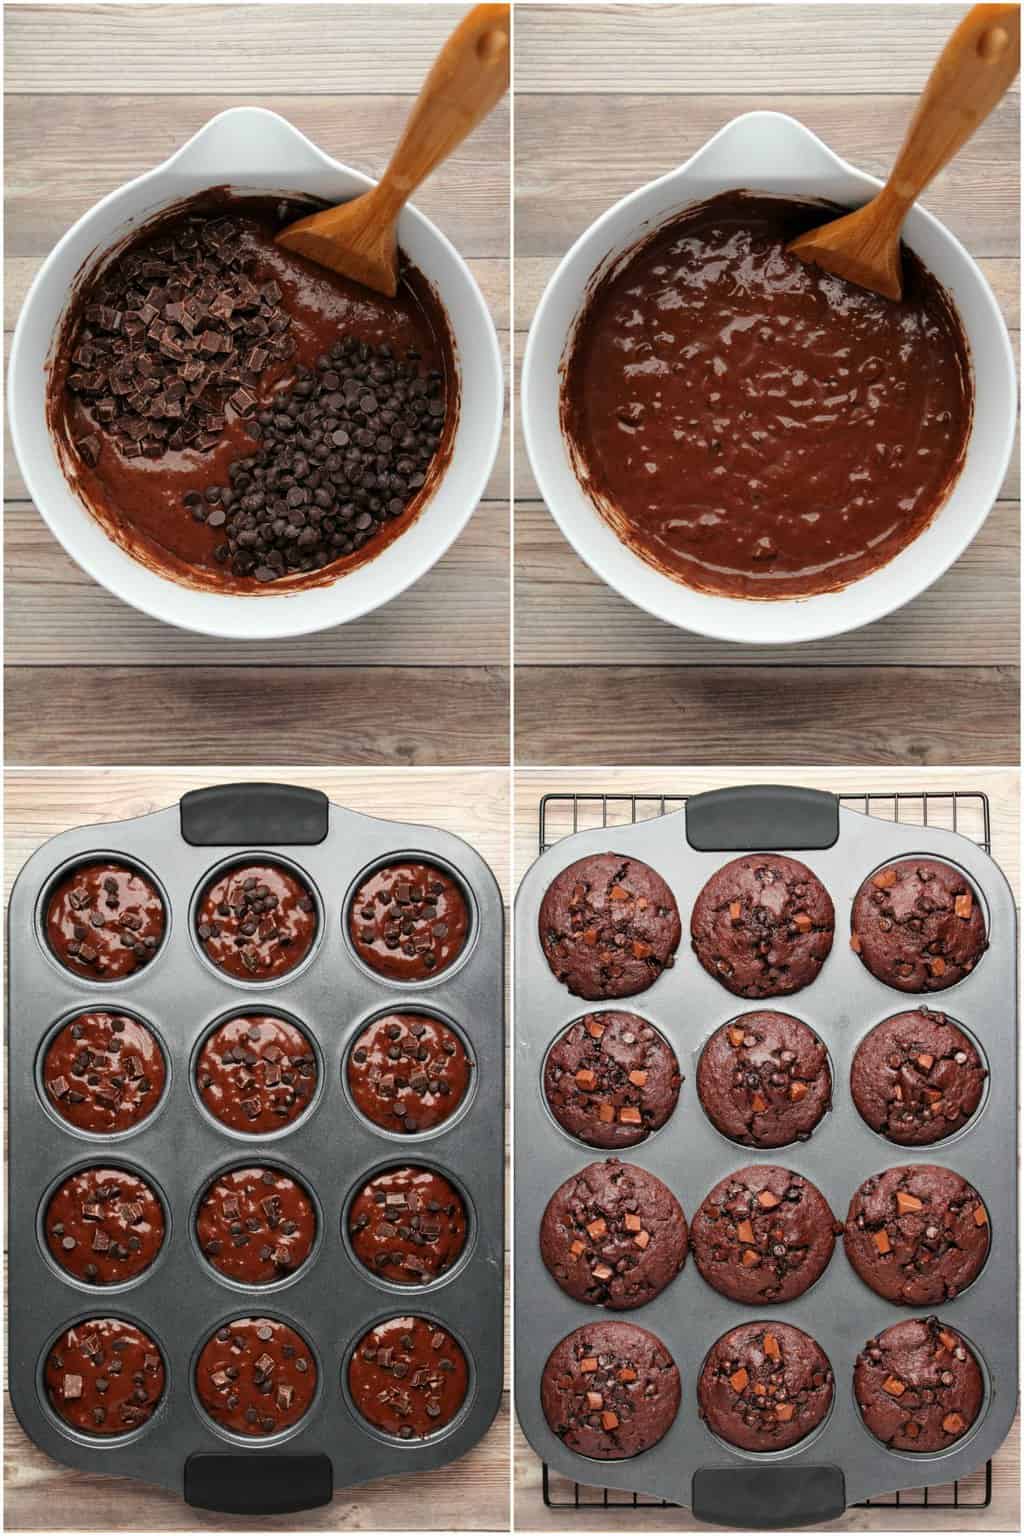 processo passo a passo colagem de fotos de fazer muffins de chocolate vegan de chocolate duplo. 